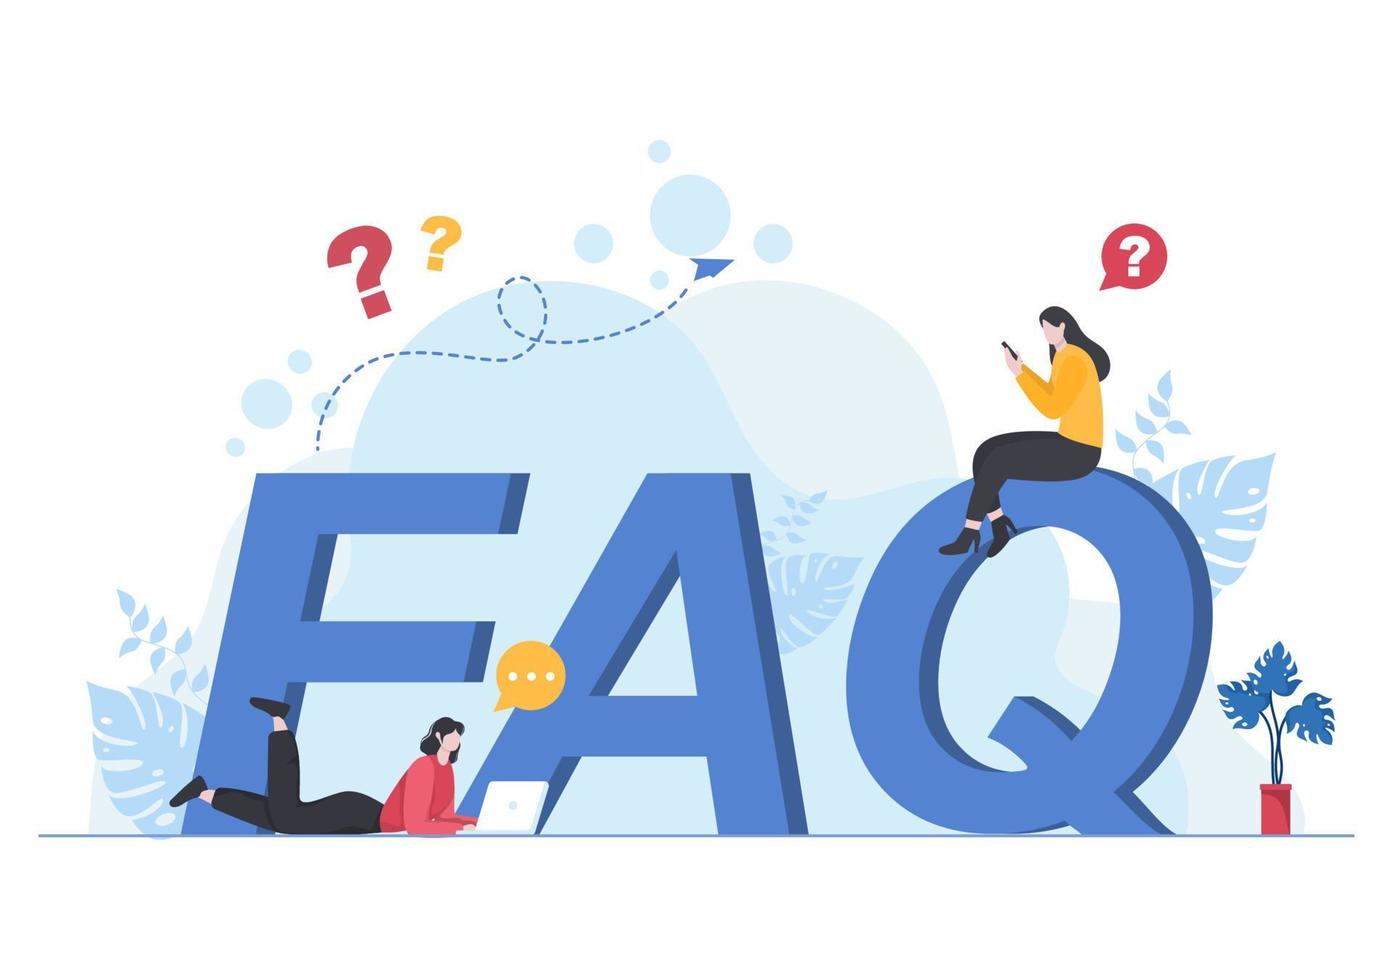 FAQ ou questions fréquemment posées pour le site Web, le service d'assistance des blogueurs, l'assistance aux clients, des informations utiles, des guides. illustration vectorielle de fond vecteur